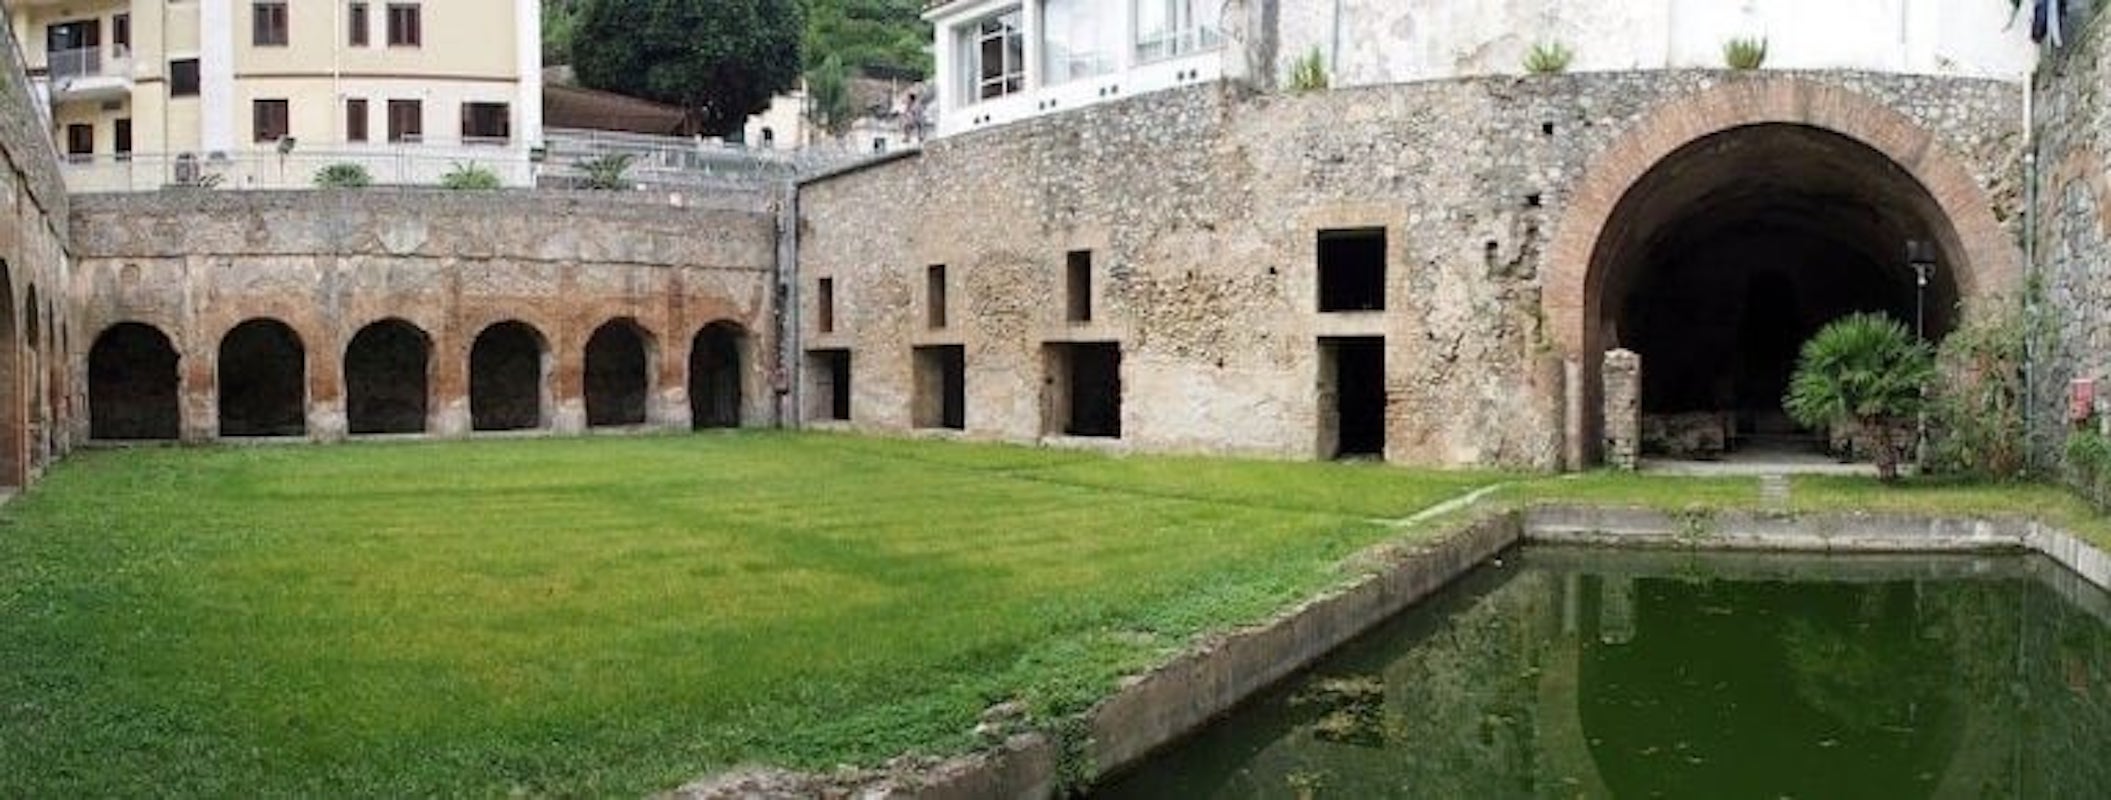 villa romana minori